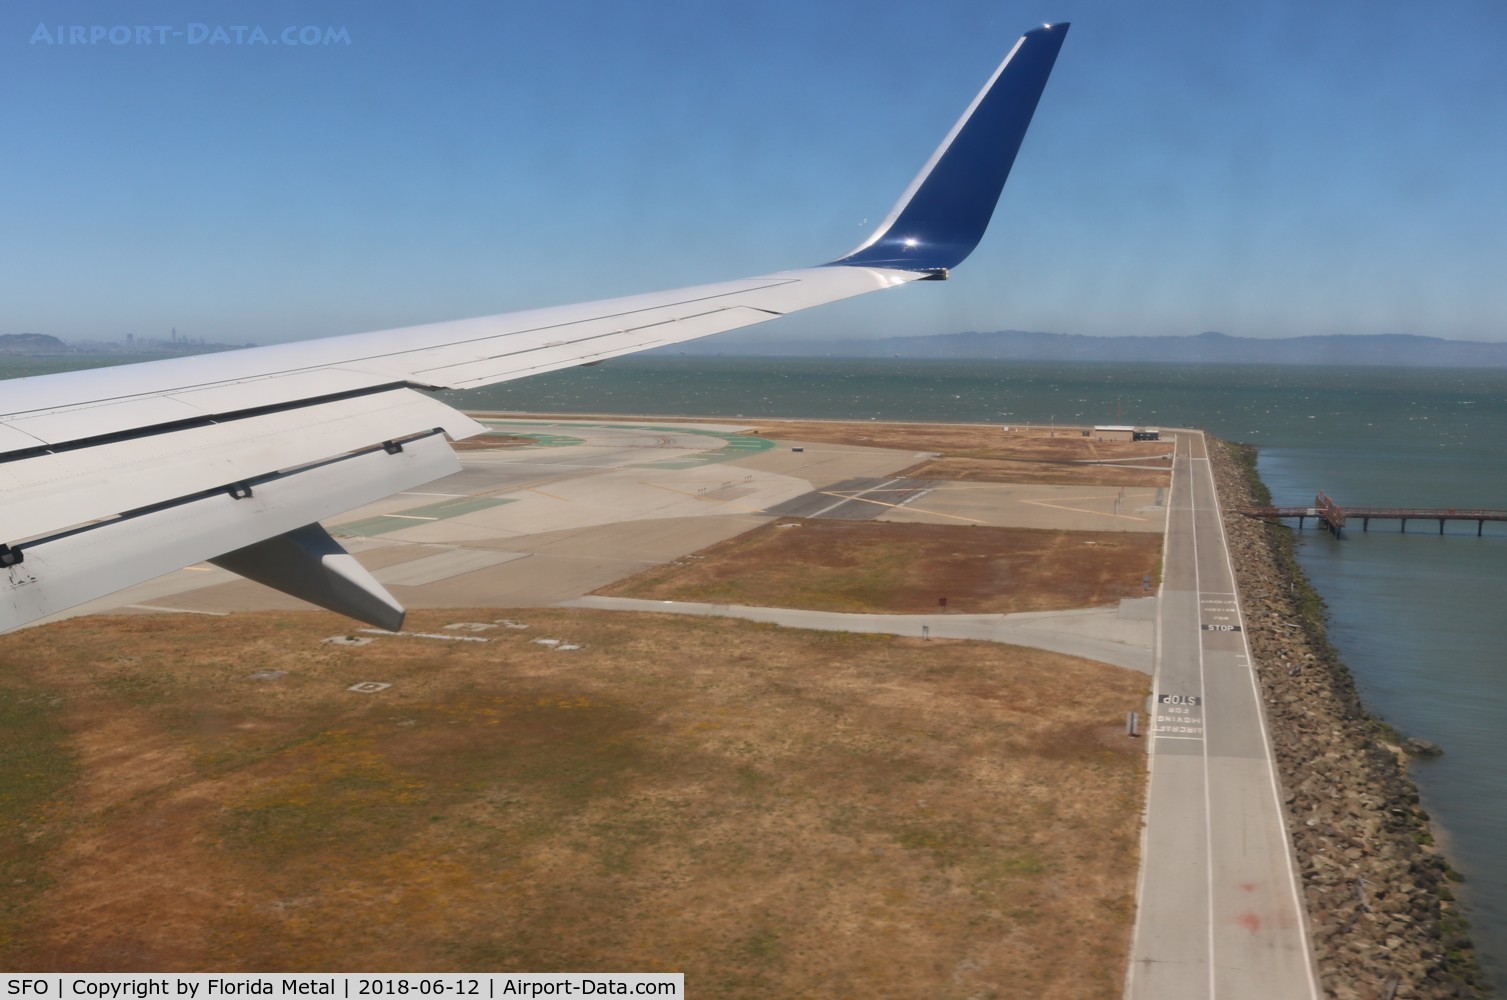 San Francisco International Airport (SFO) - Landing at San Francisco